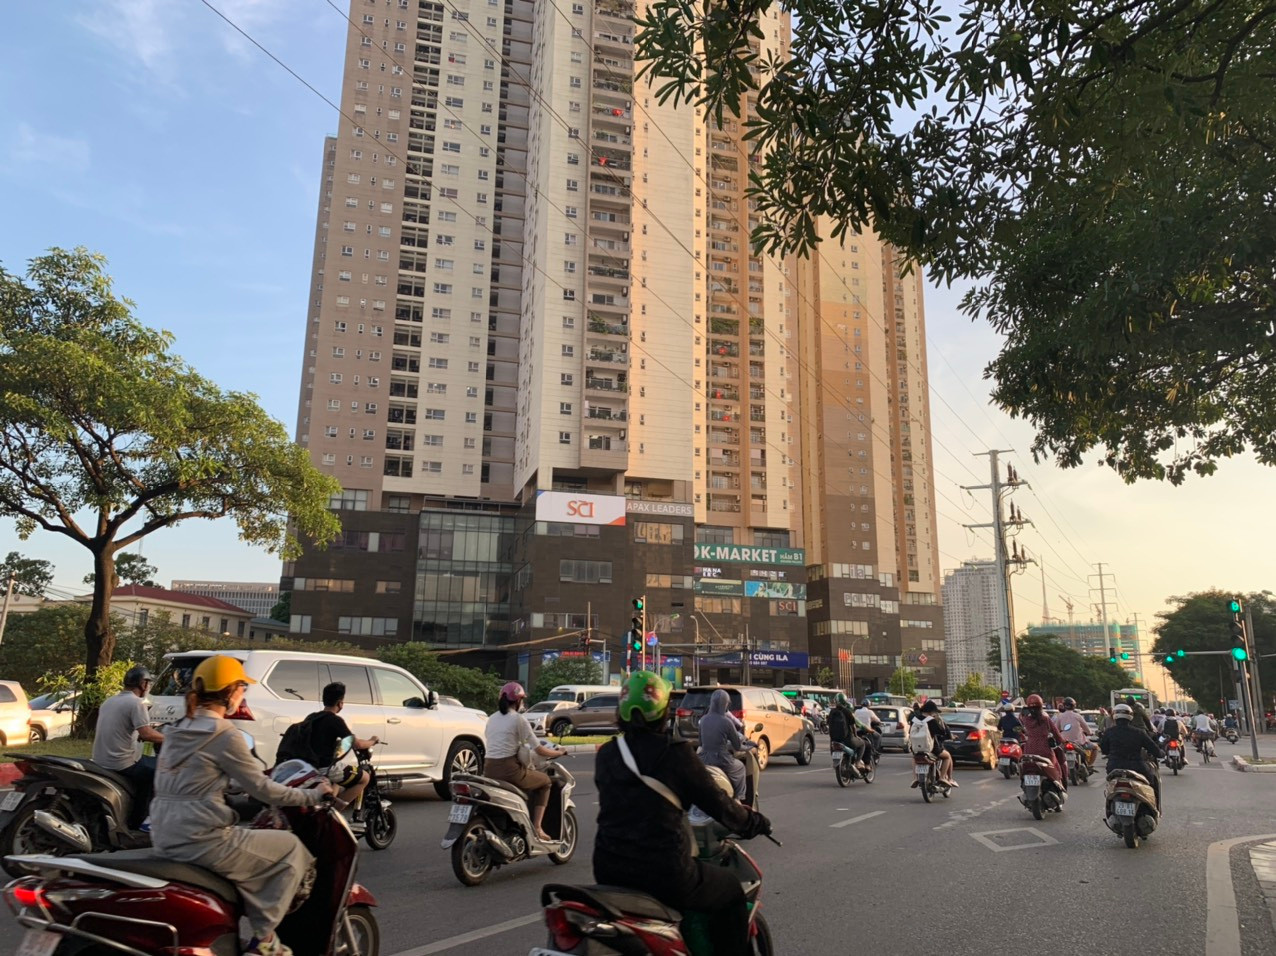 Giá chung cư tại Hà Nội khi nào sẽ hạ?